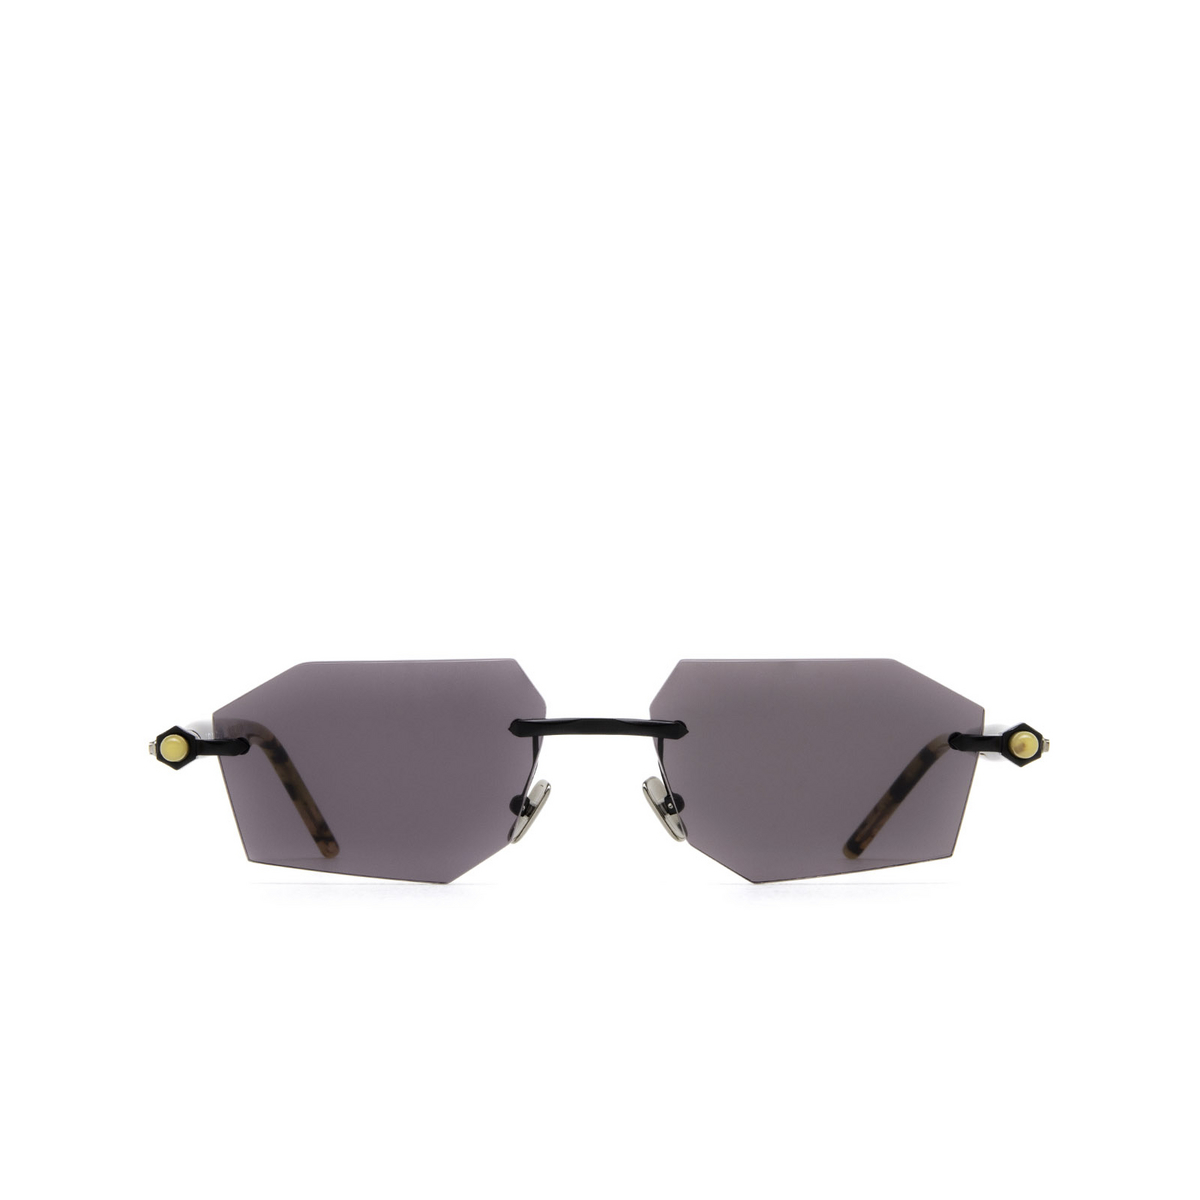 Kuboraum P55 Sunglasses BM TR Black Matt & Black Shine Tortoise - front view